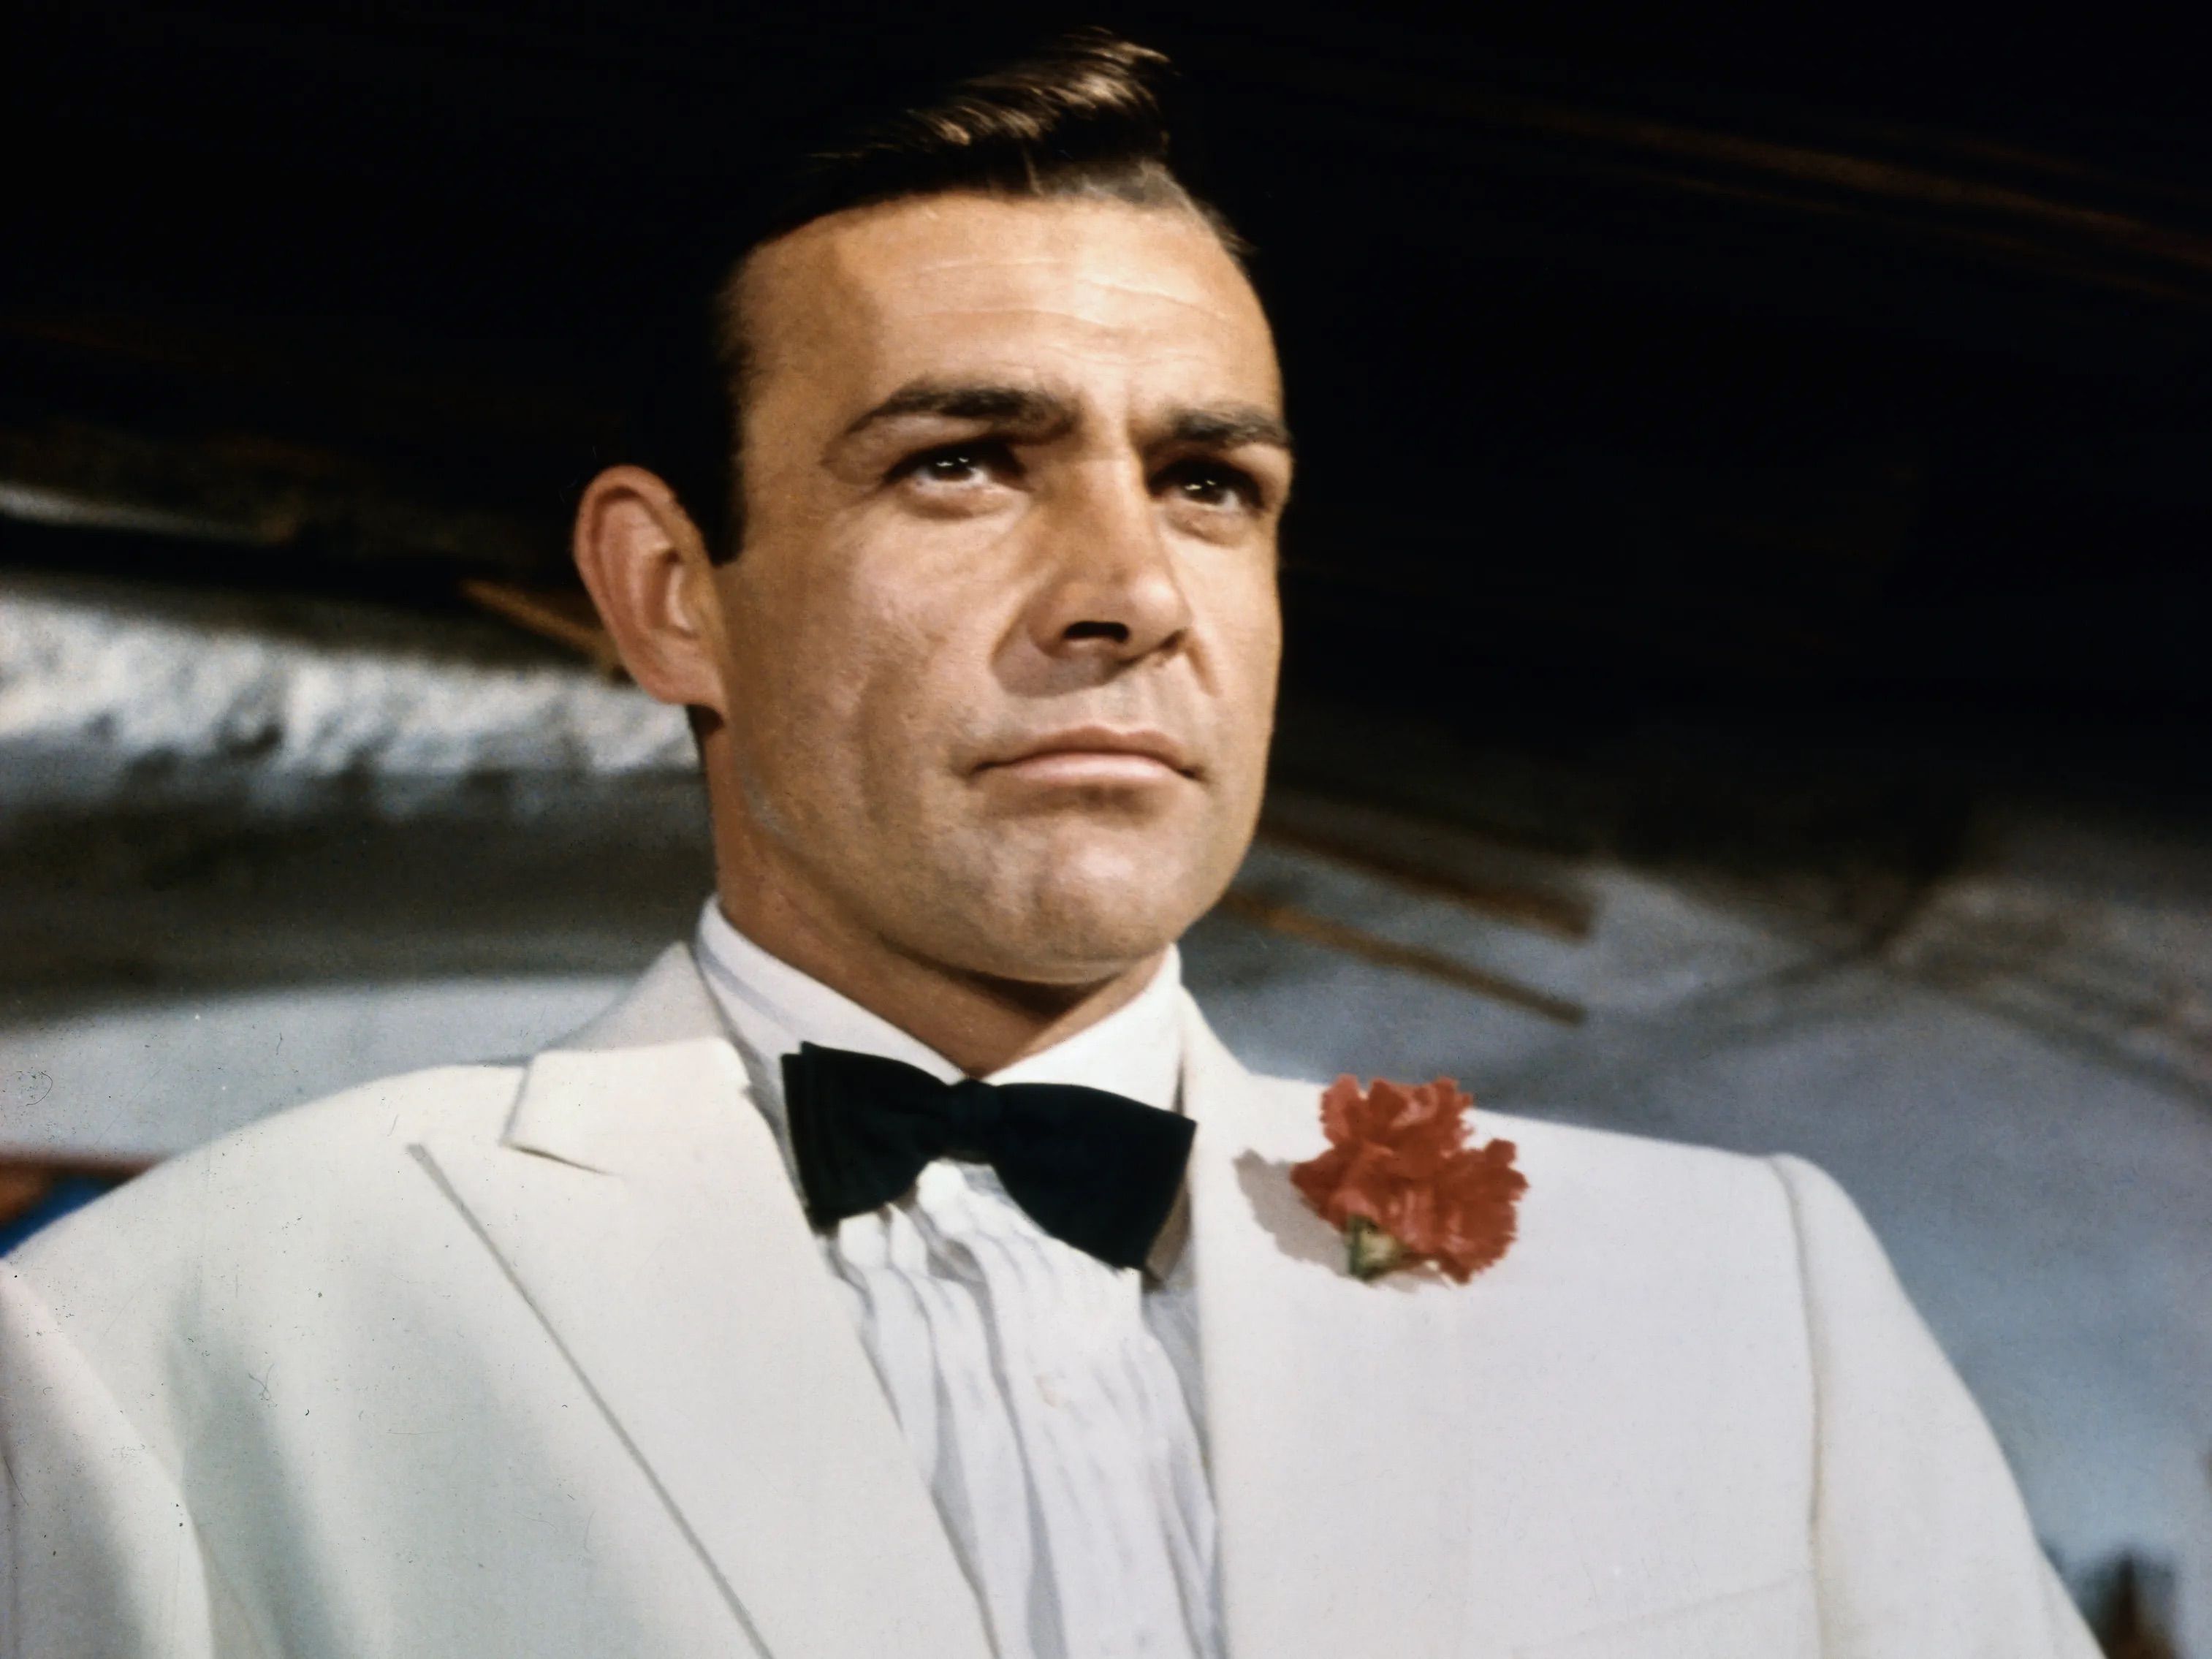 La censura también ataca a James Bond: sus novelas serán reescritas sin referencias raciales